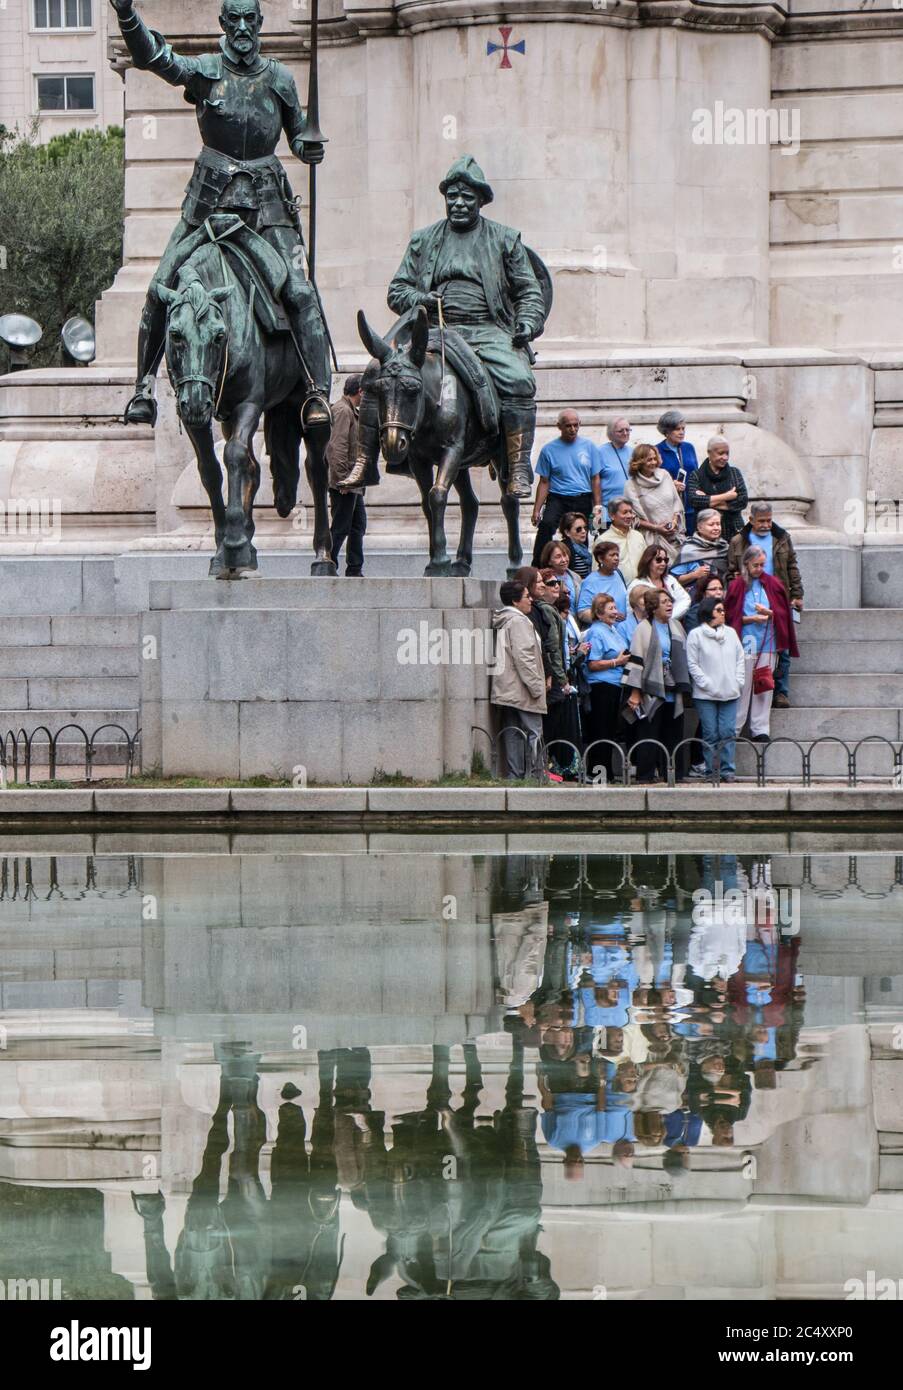 Un gruppo turistico posa davanti alle statue equestri di Don Chisciotte e Sancho Panza: Monumento Cervantes, Plaza de Espana, Madrid Foto Stock